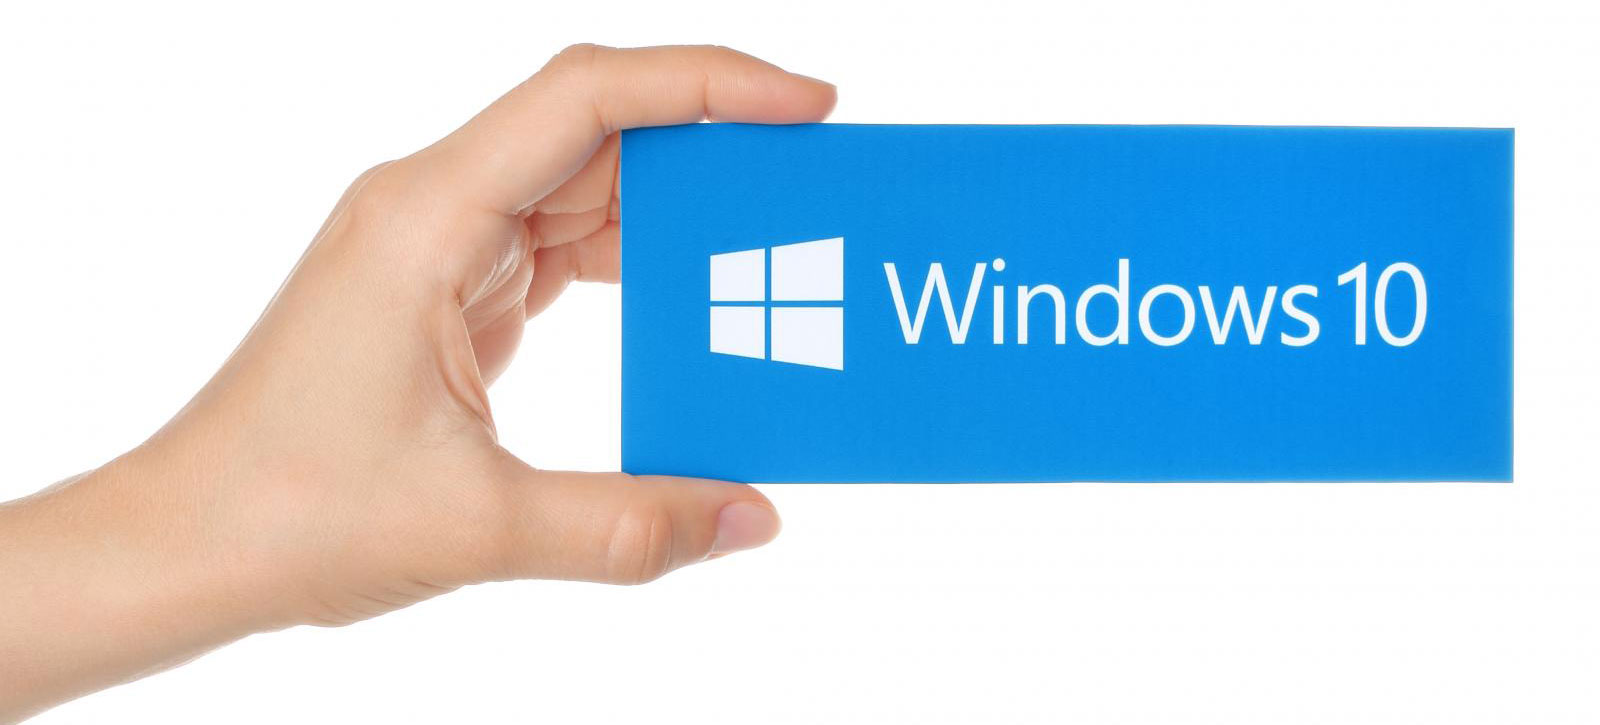 مایکروسافت در حال تلاش برای رفع باگ ویندوز 10 است که می تواند به هارد درایو شما آسیب برساند